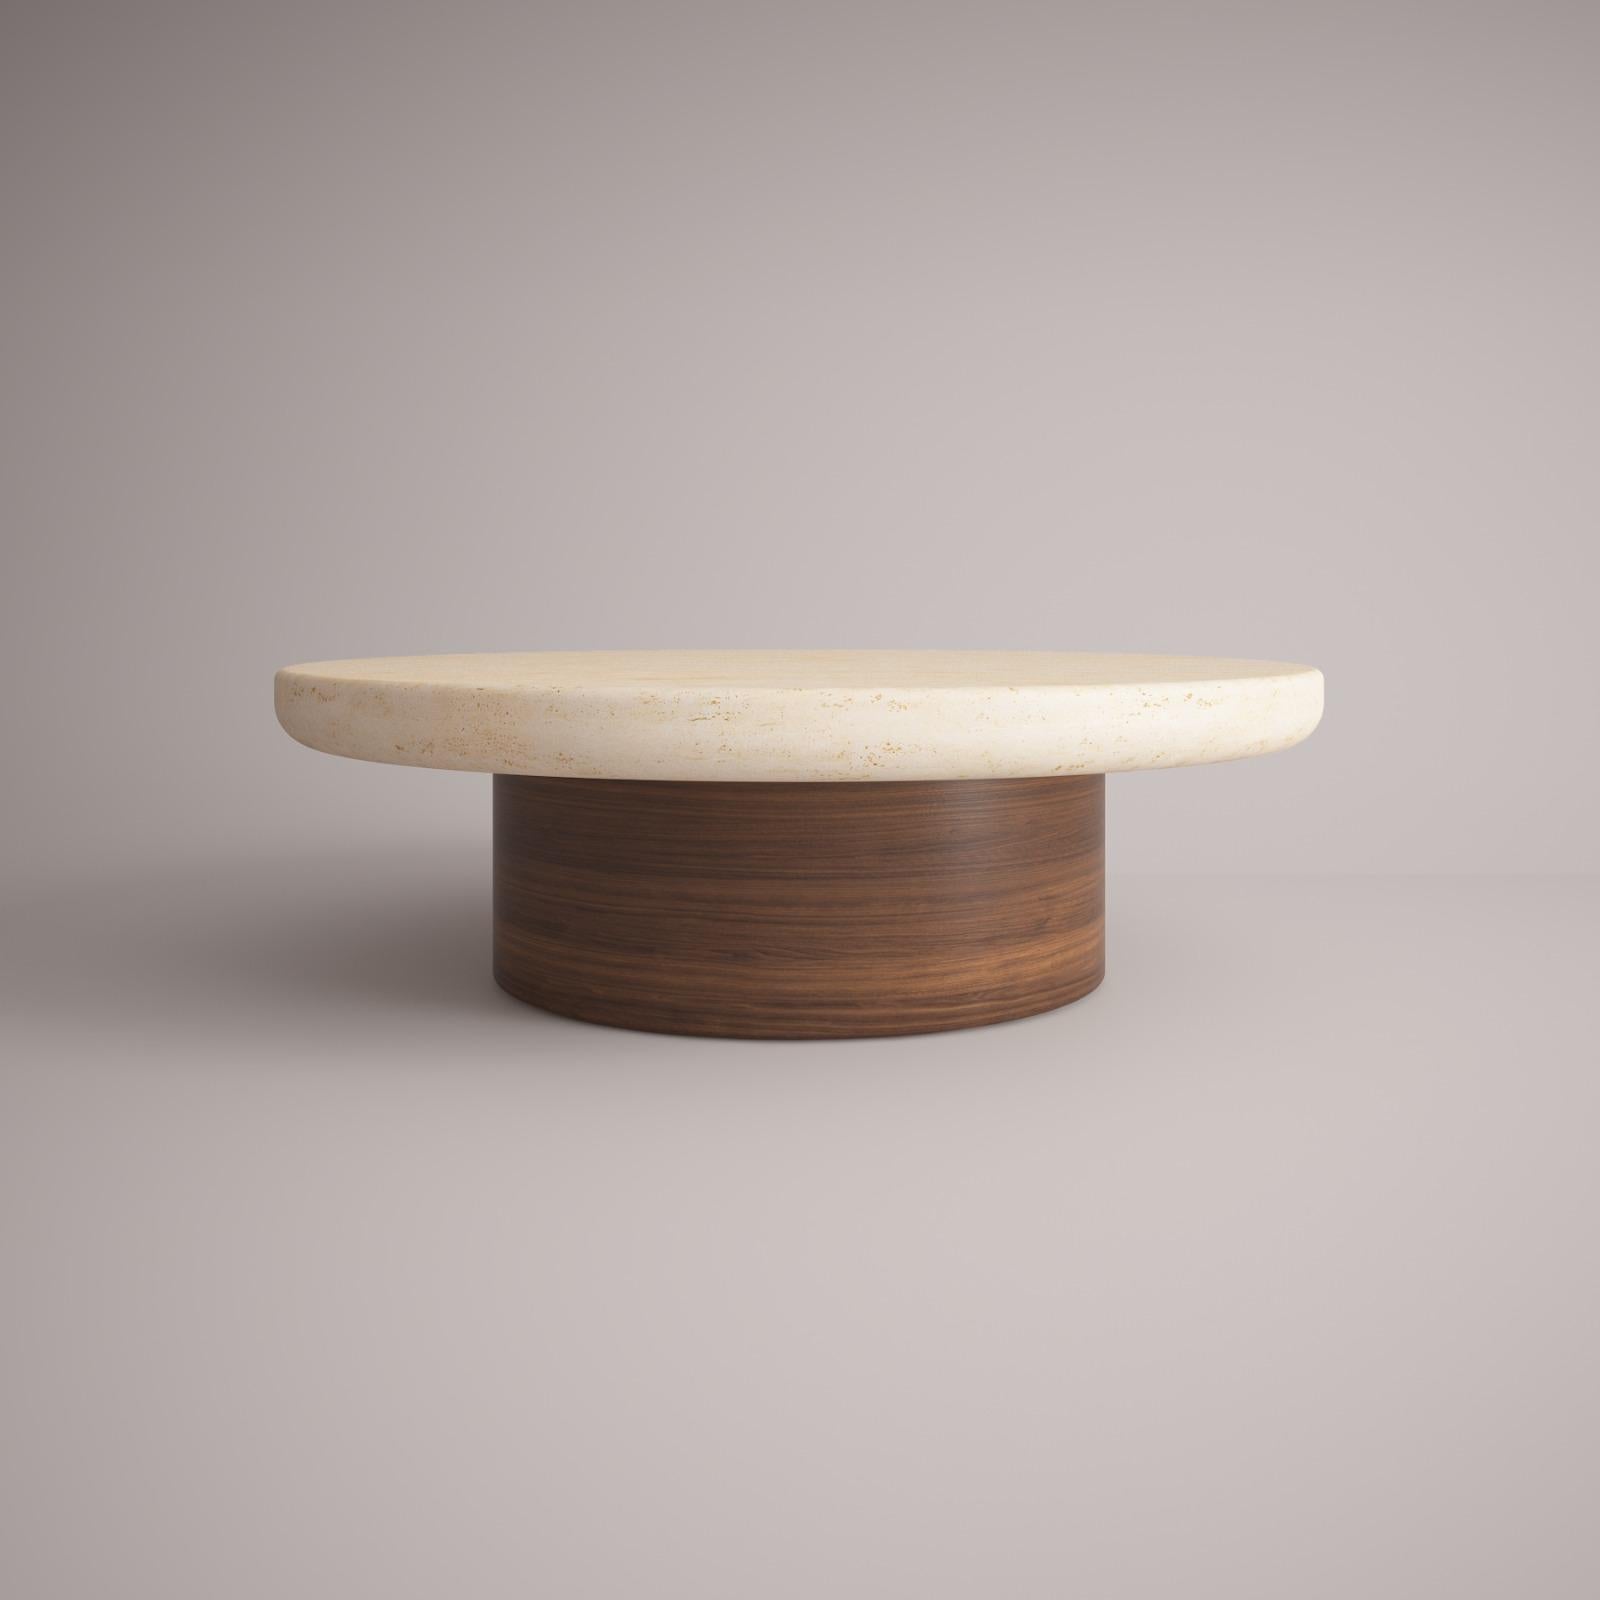 Lessa - Europäischer Mitteltisch des 21. Jahrhunderts Entworfen von Studio Rig Travertino Wood

Die Marke Collector wurde in Portugal geboren und möchte Teil des täglichen Lebens sein, indem sie Möbel mit den häuslichen Routinen und Lebensstilen